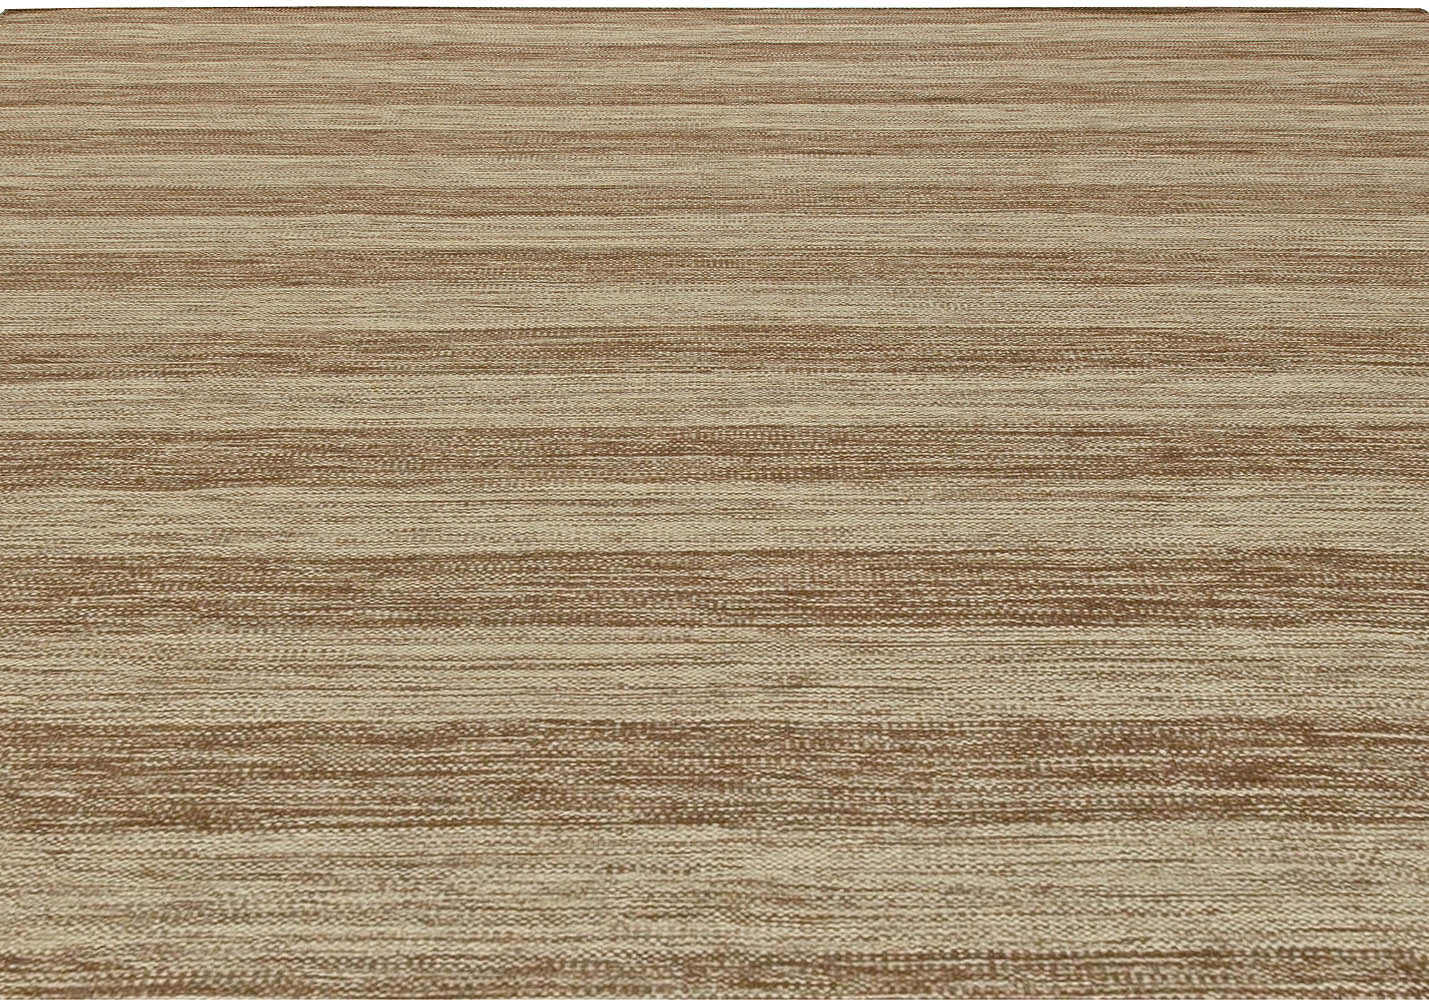 Doris Leslie Blau Collection Flat-Weave Wool Rug in Brown and Beige Stripes N11074